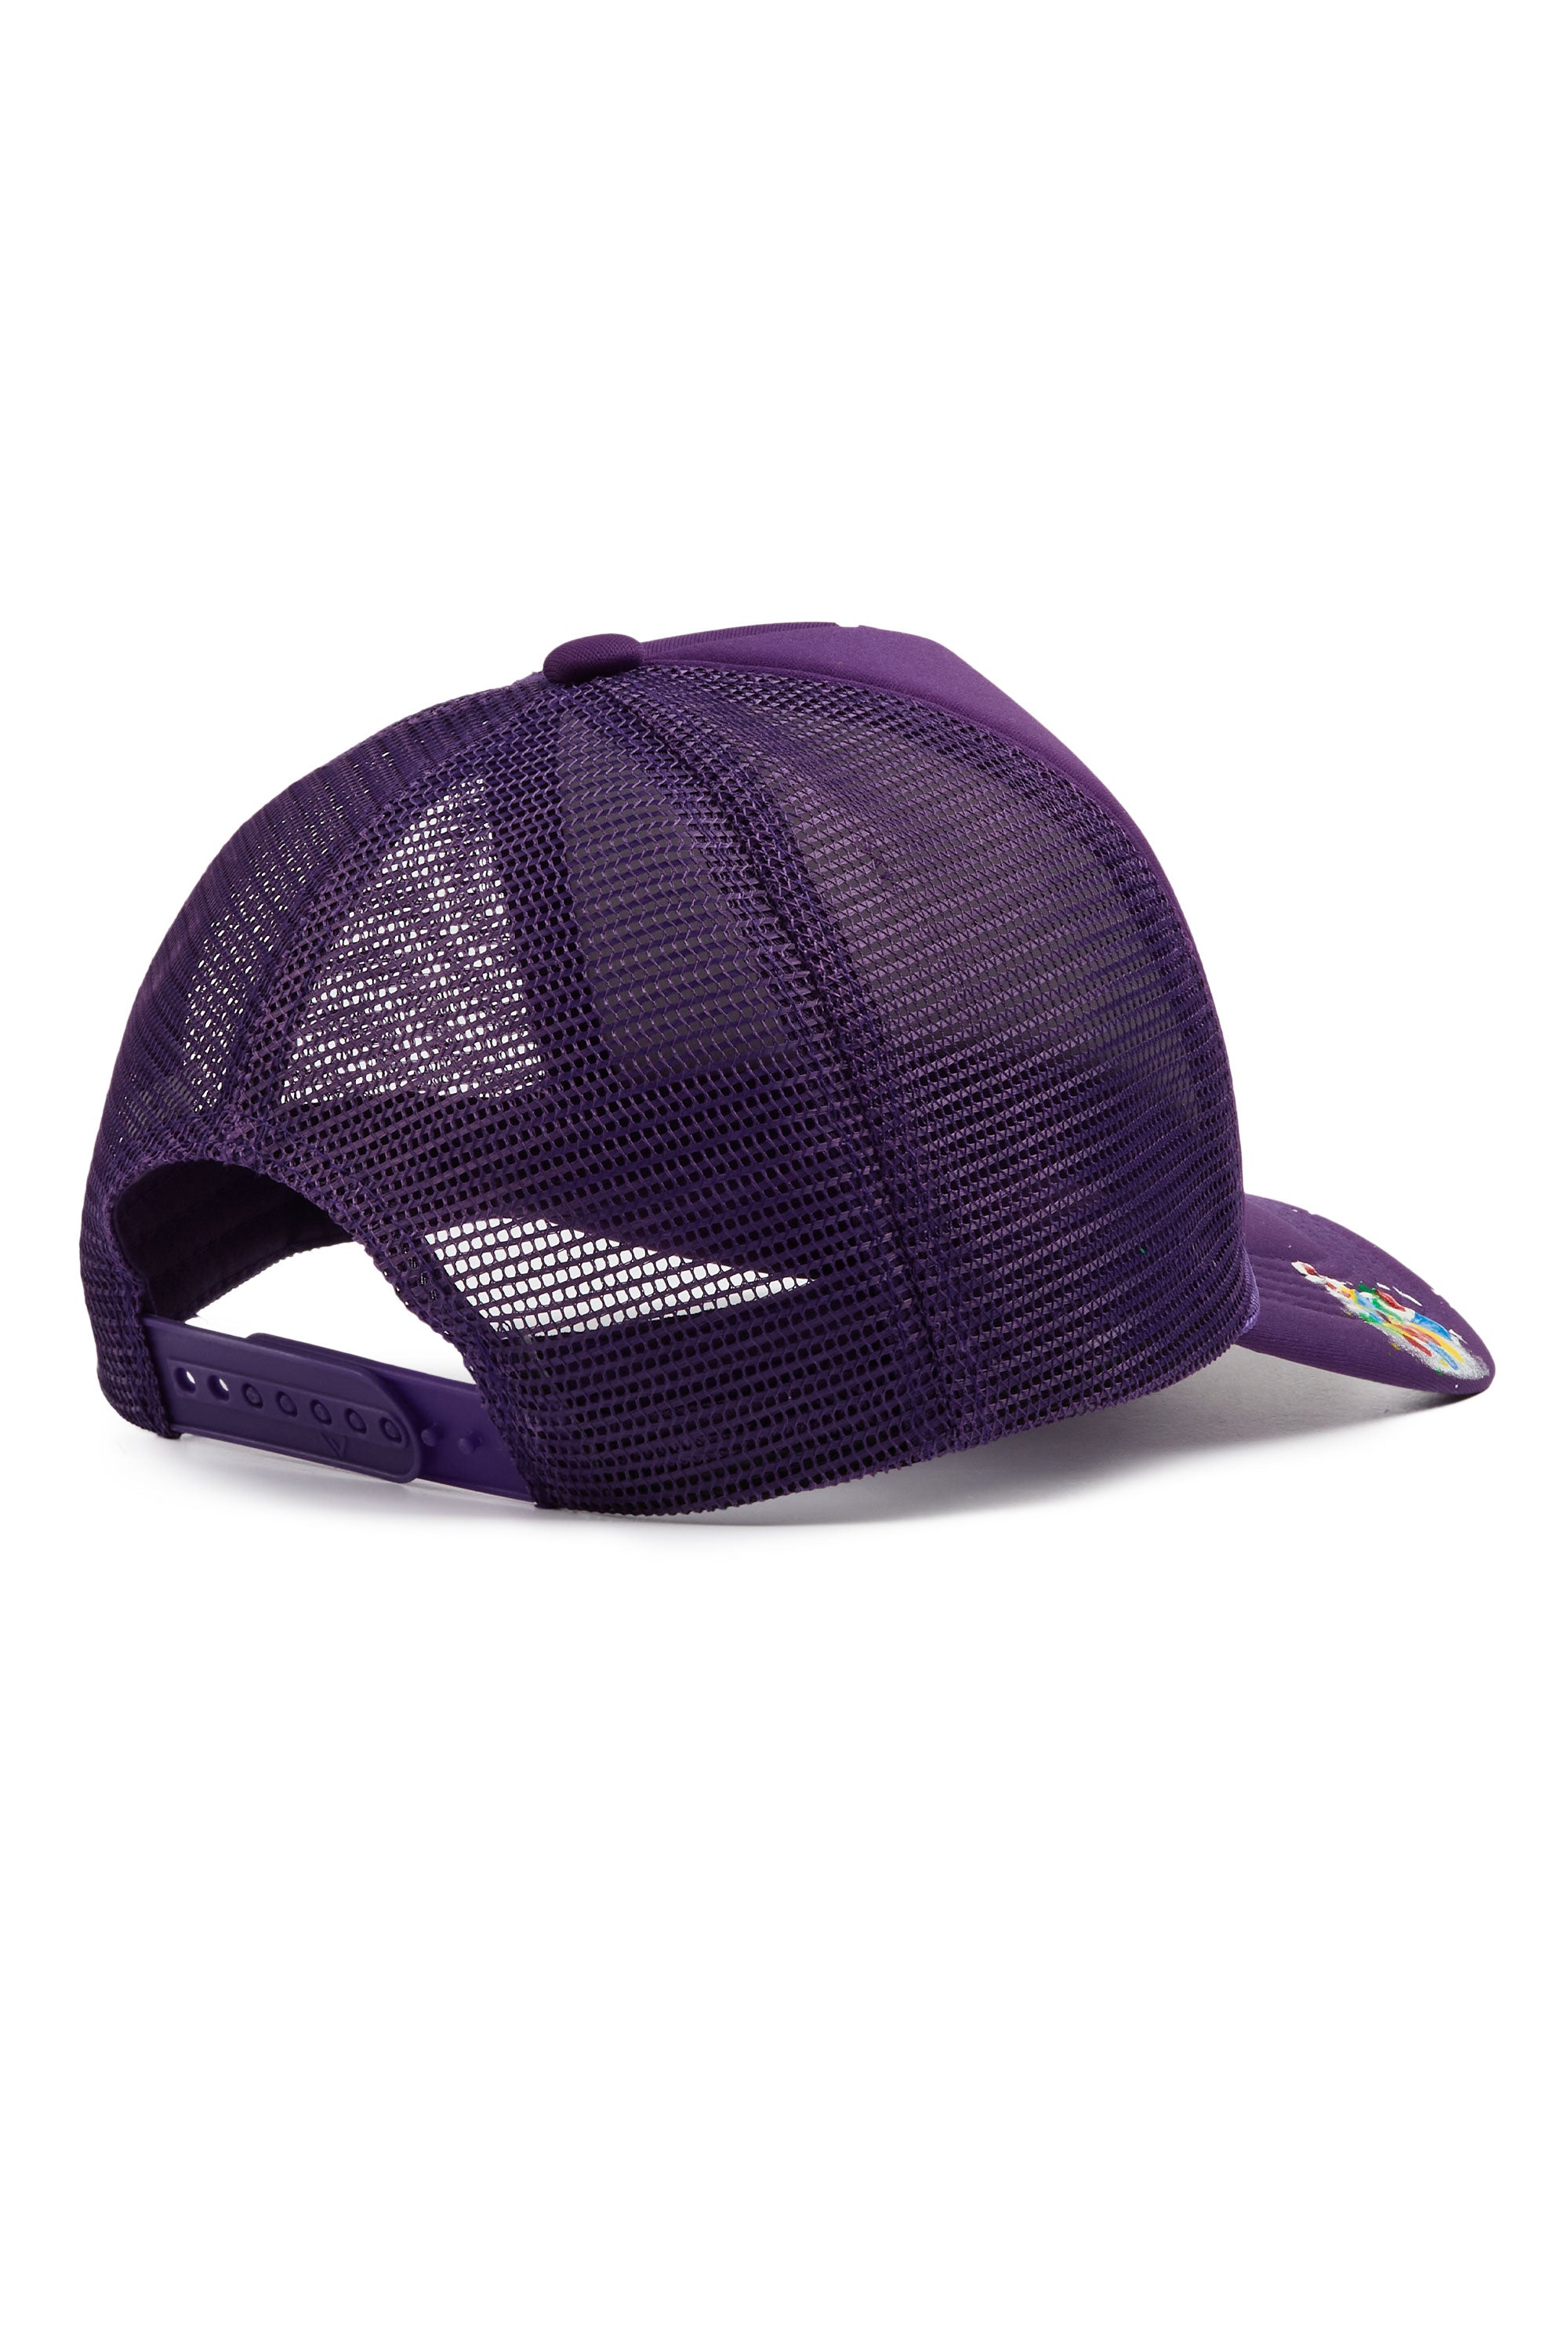 Neptune Purple Trucker Hat